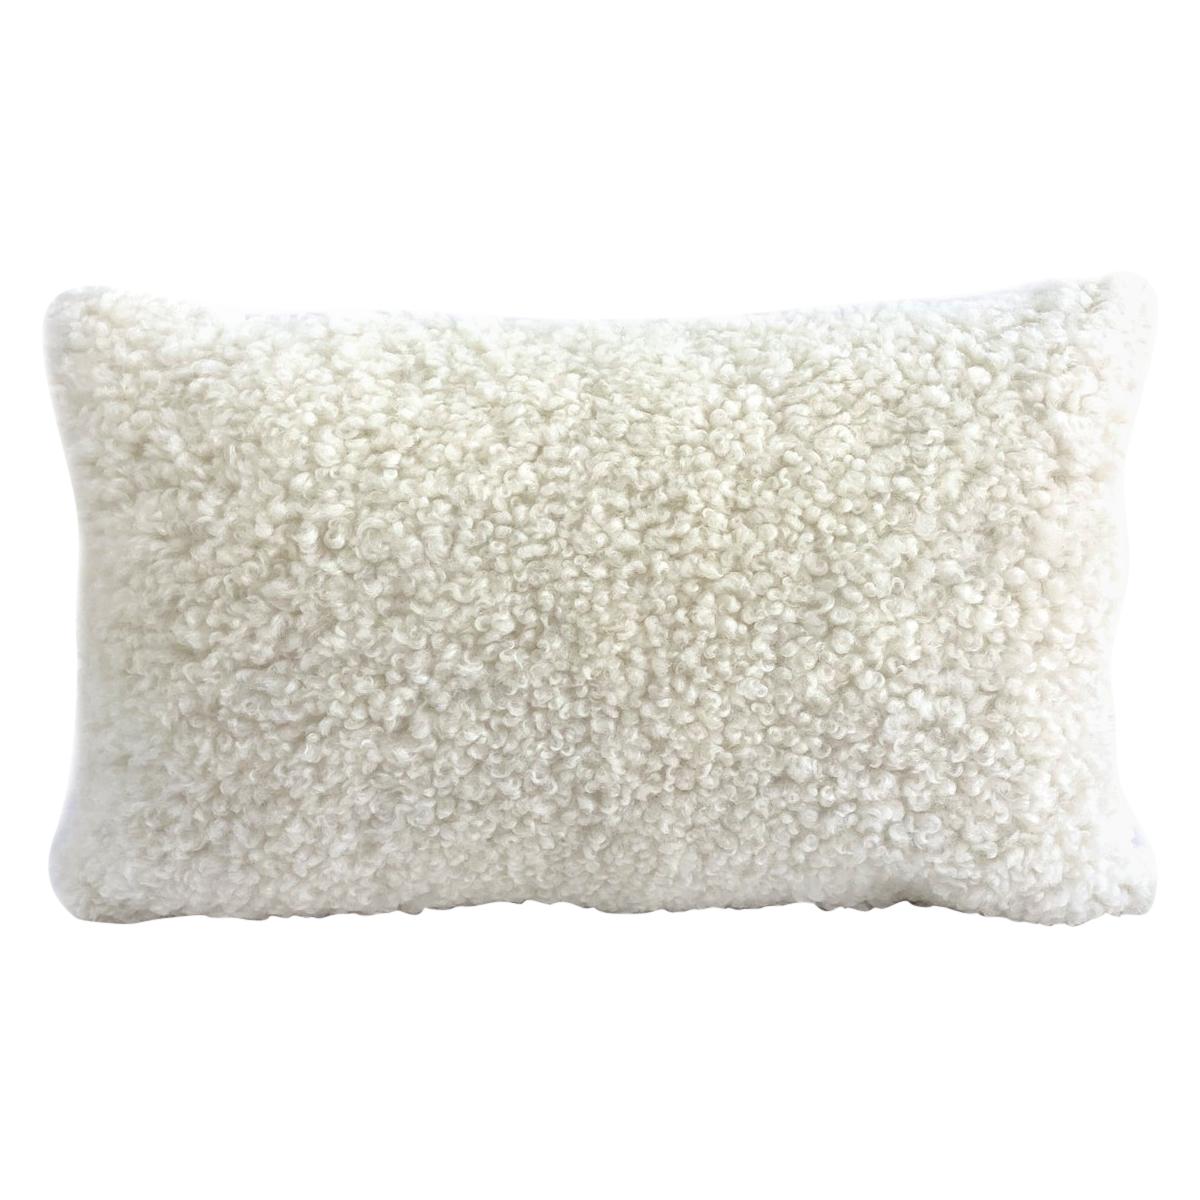 Sheepskin Shearling Pillow Lumbar - White 35*60cm  14*24"